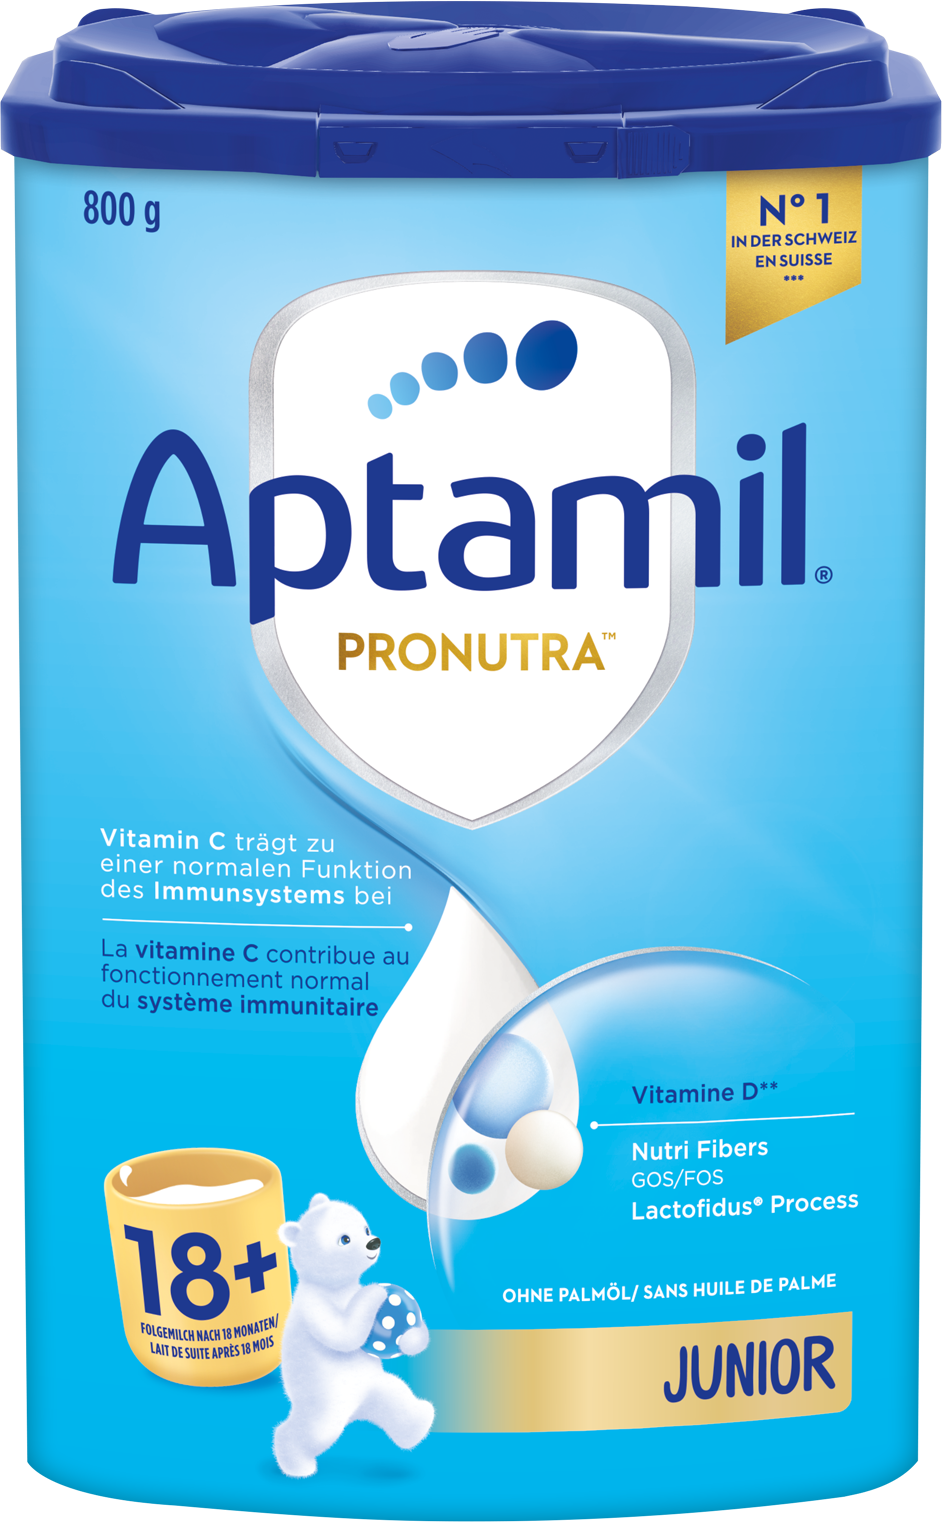 Aptamil Pronutra Junior 12+ 800g POF CH Packshot